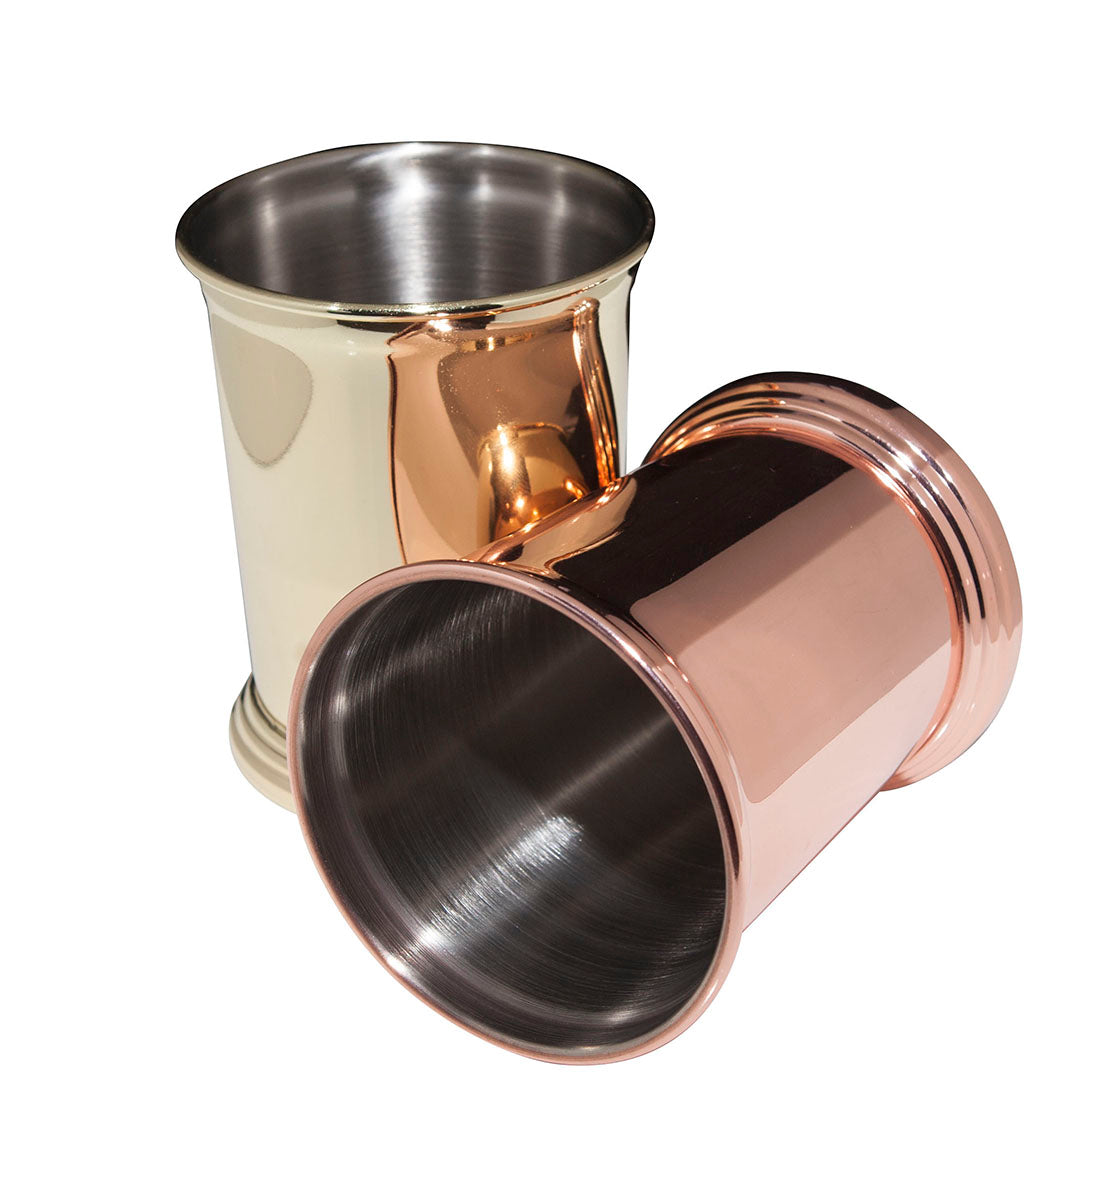 Julep Cup Copper - Überbartools™